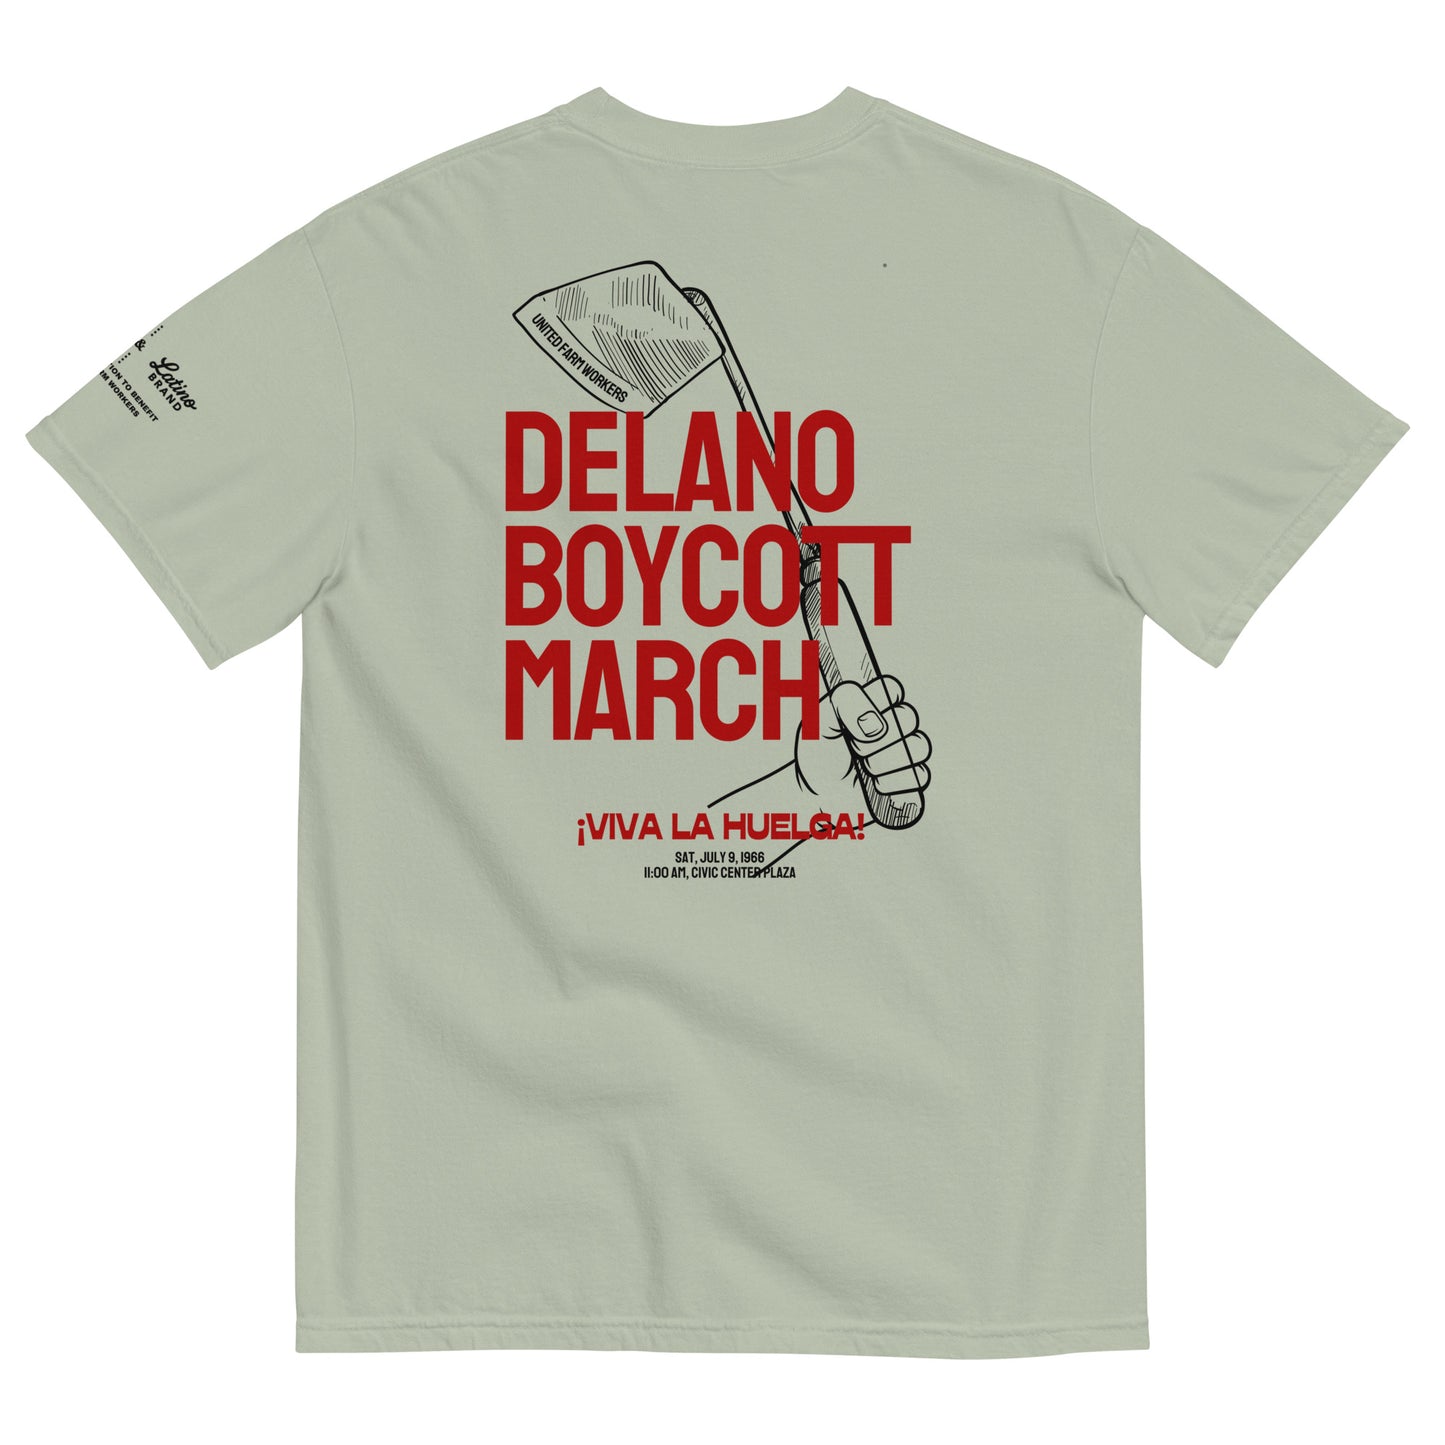 UFW® - The Boycott March t-shirt.